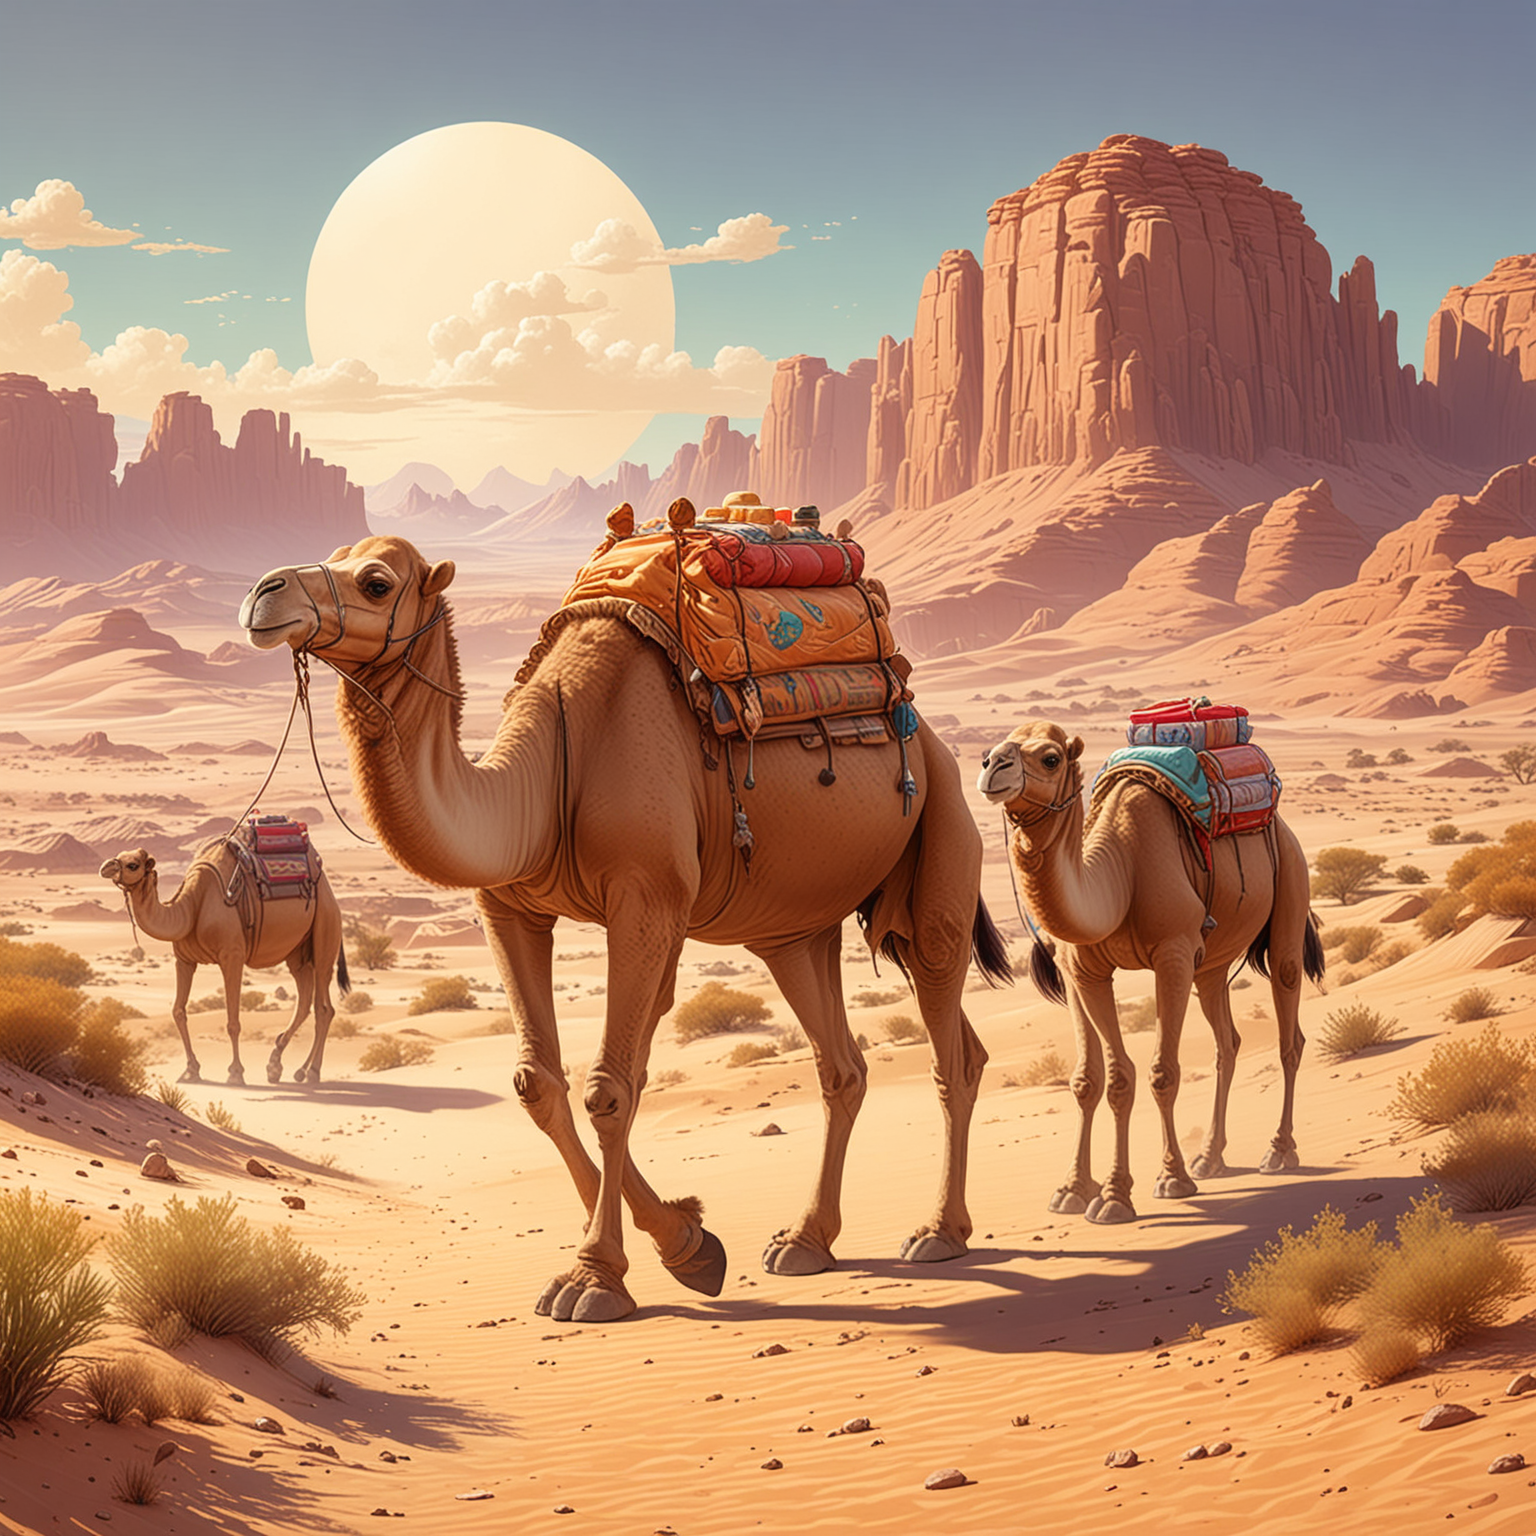  Eine Familie von Dromedaren wandert durch die Wüste, ihre charakteristischen Höcker voll beladen mit Vorräten, illustration, kawaii style